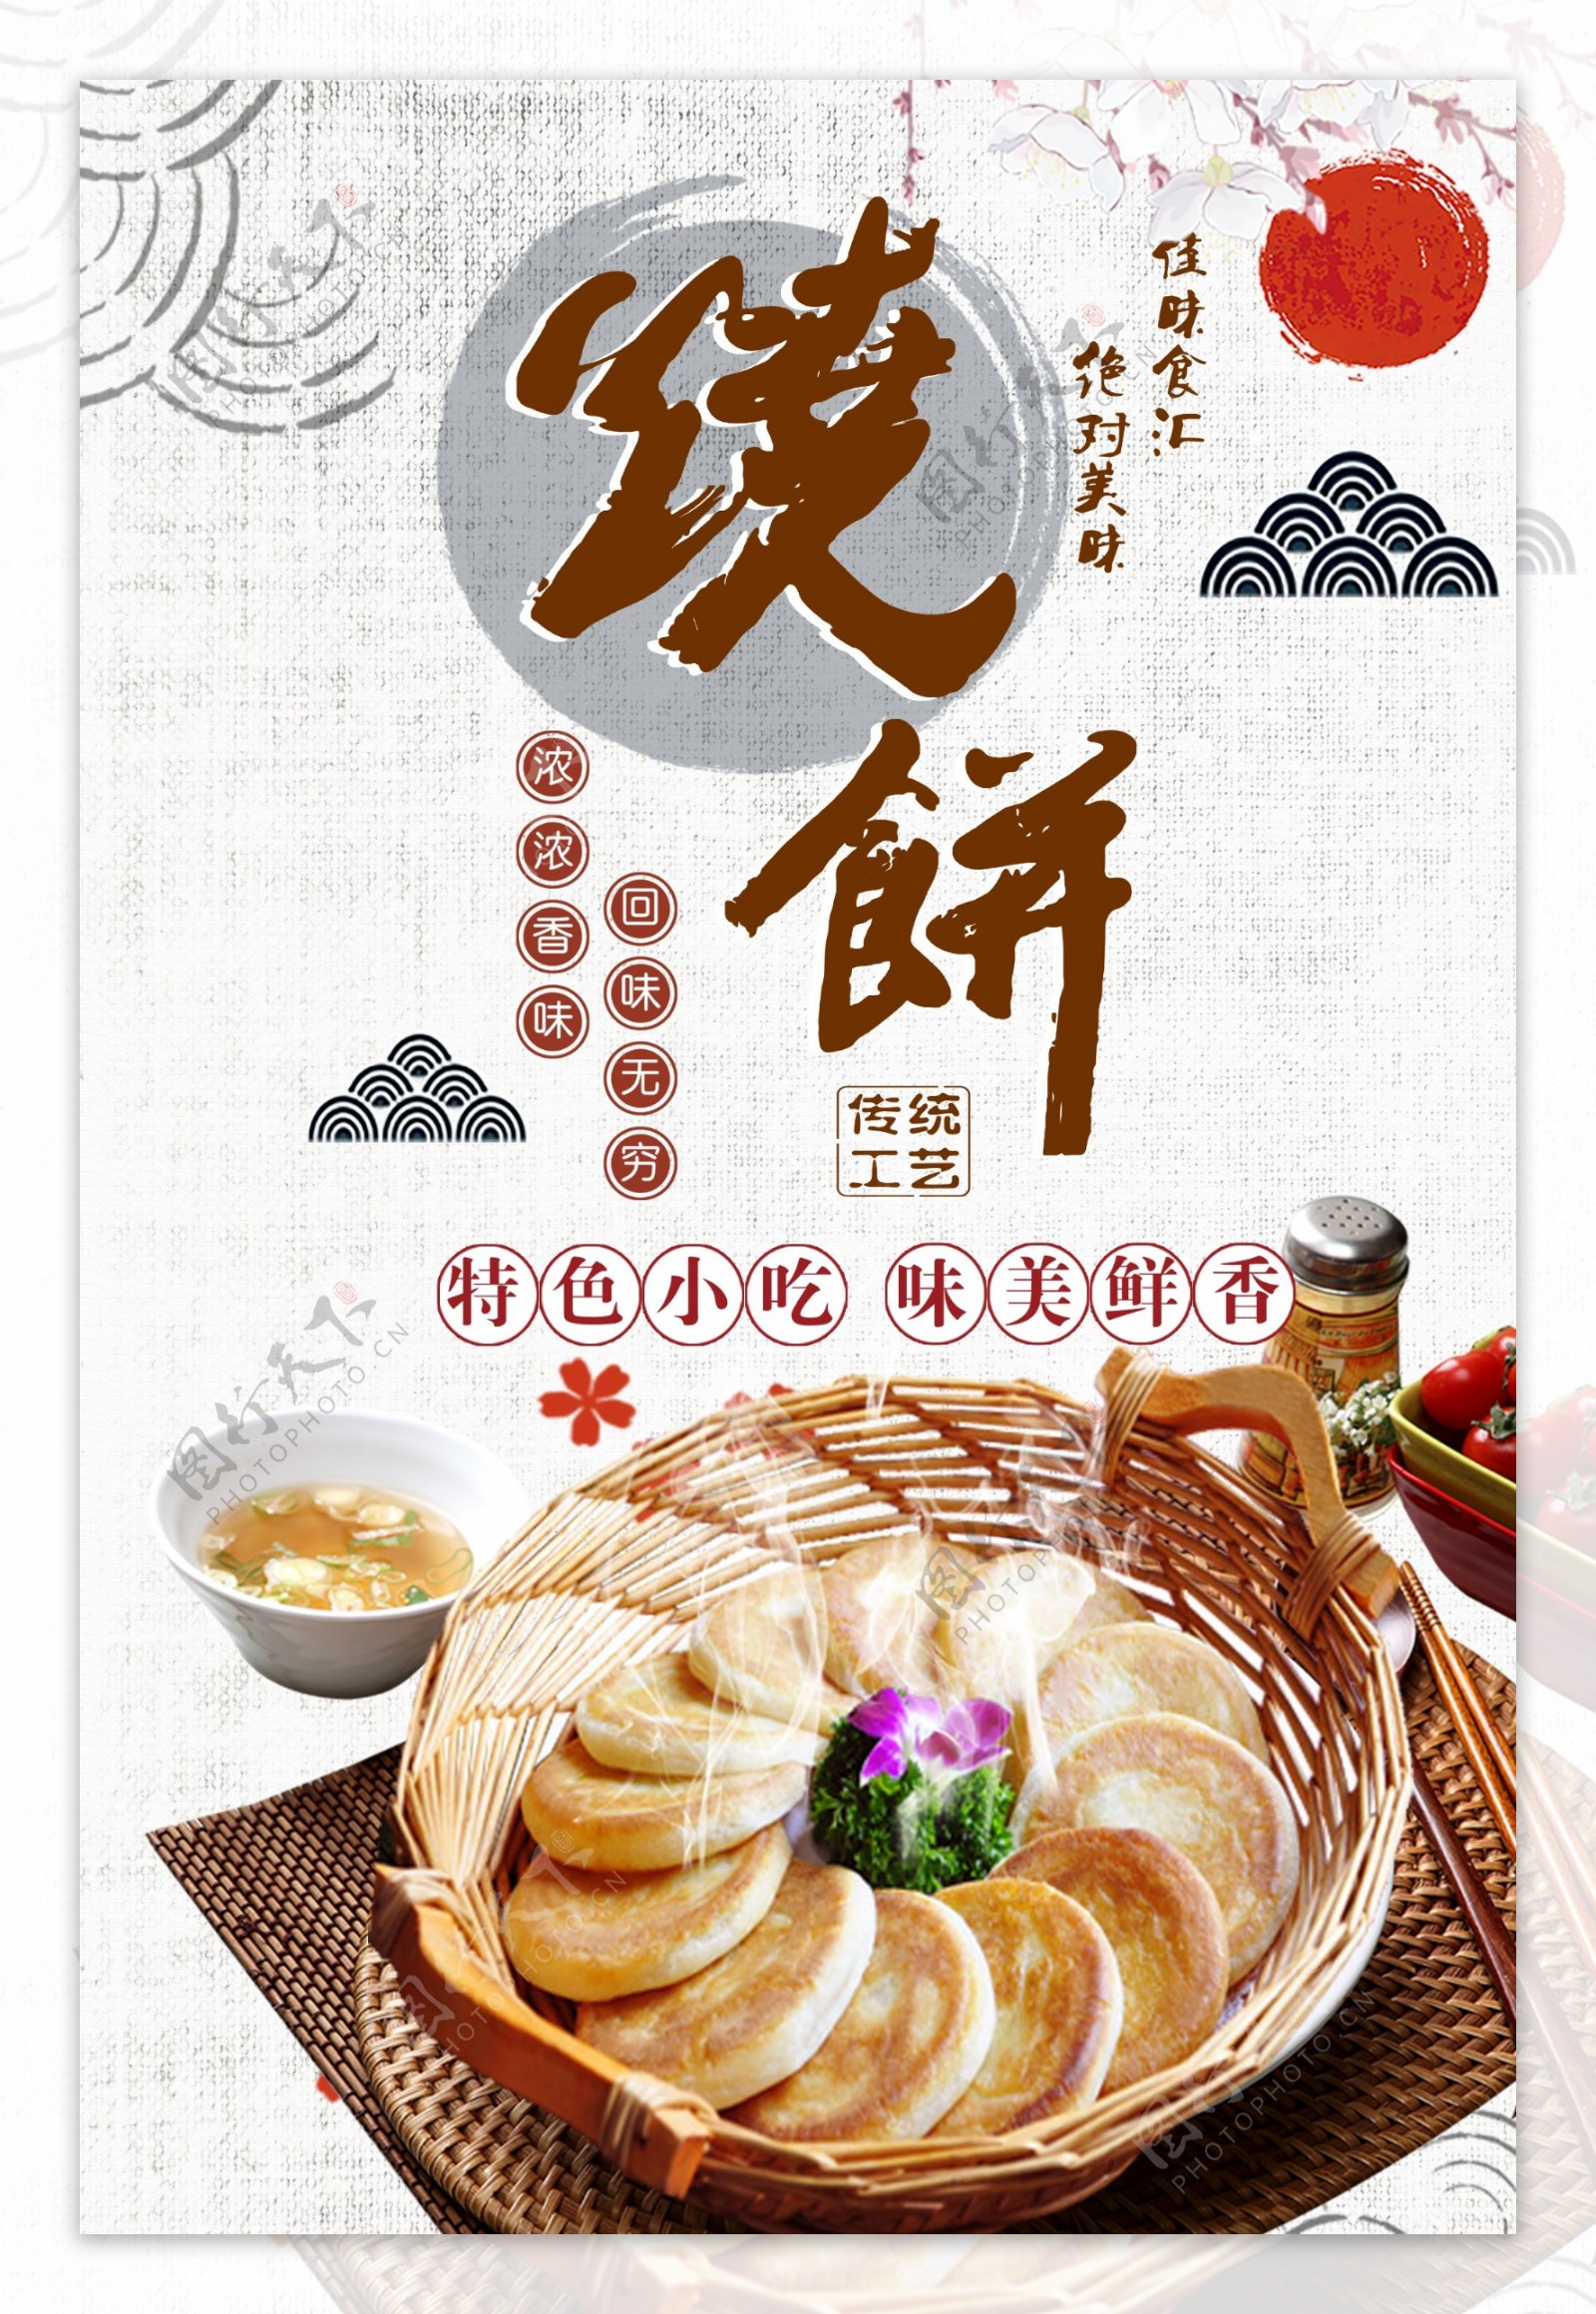 白色背景简约大气中国风美味烧饼宣传海报